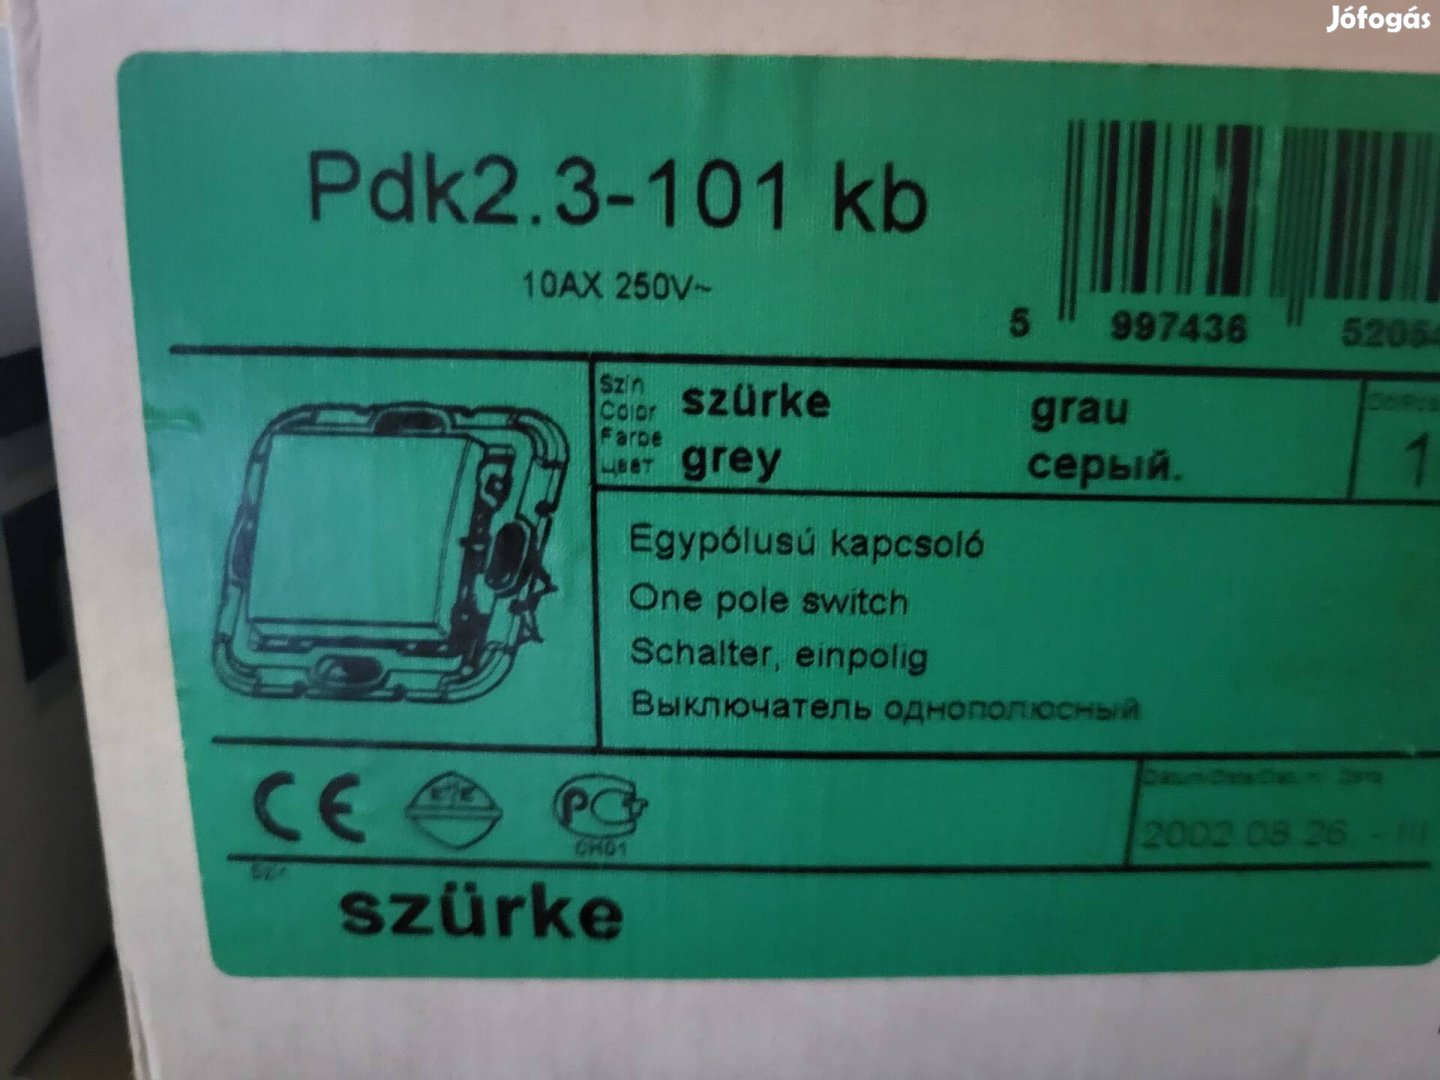 Prodax Pdk 2.3-101 kb és Pdk 2.3- 102 kb villanykapcsolók eladók.